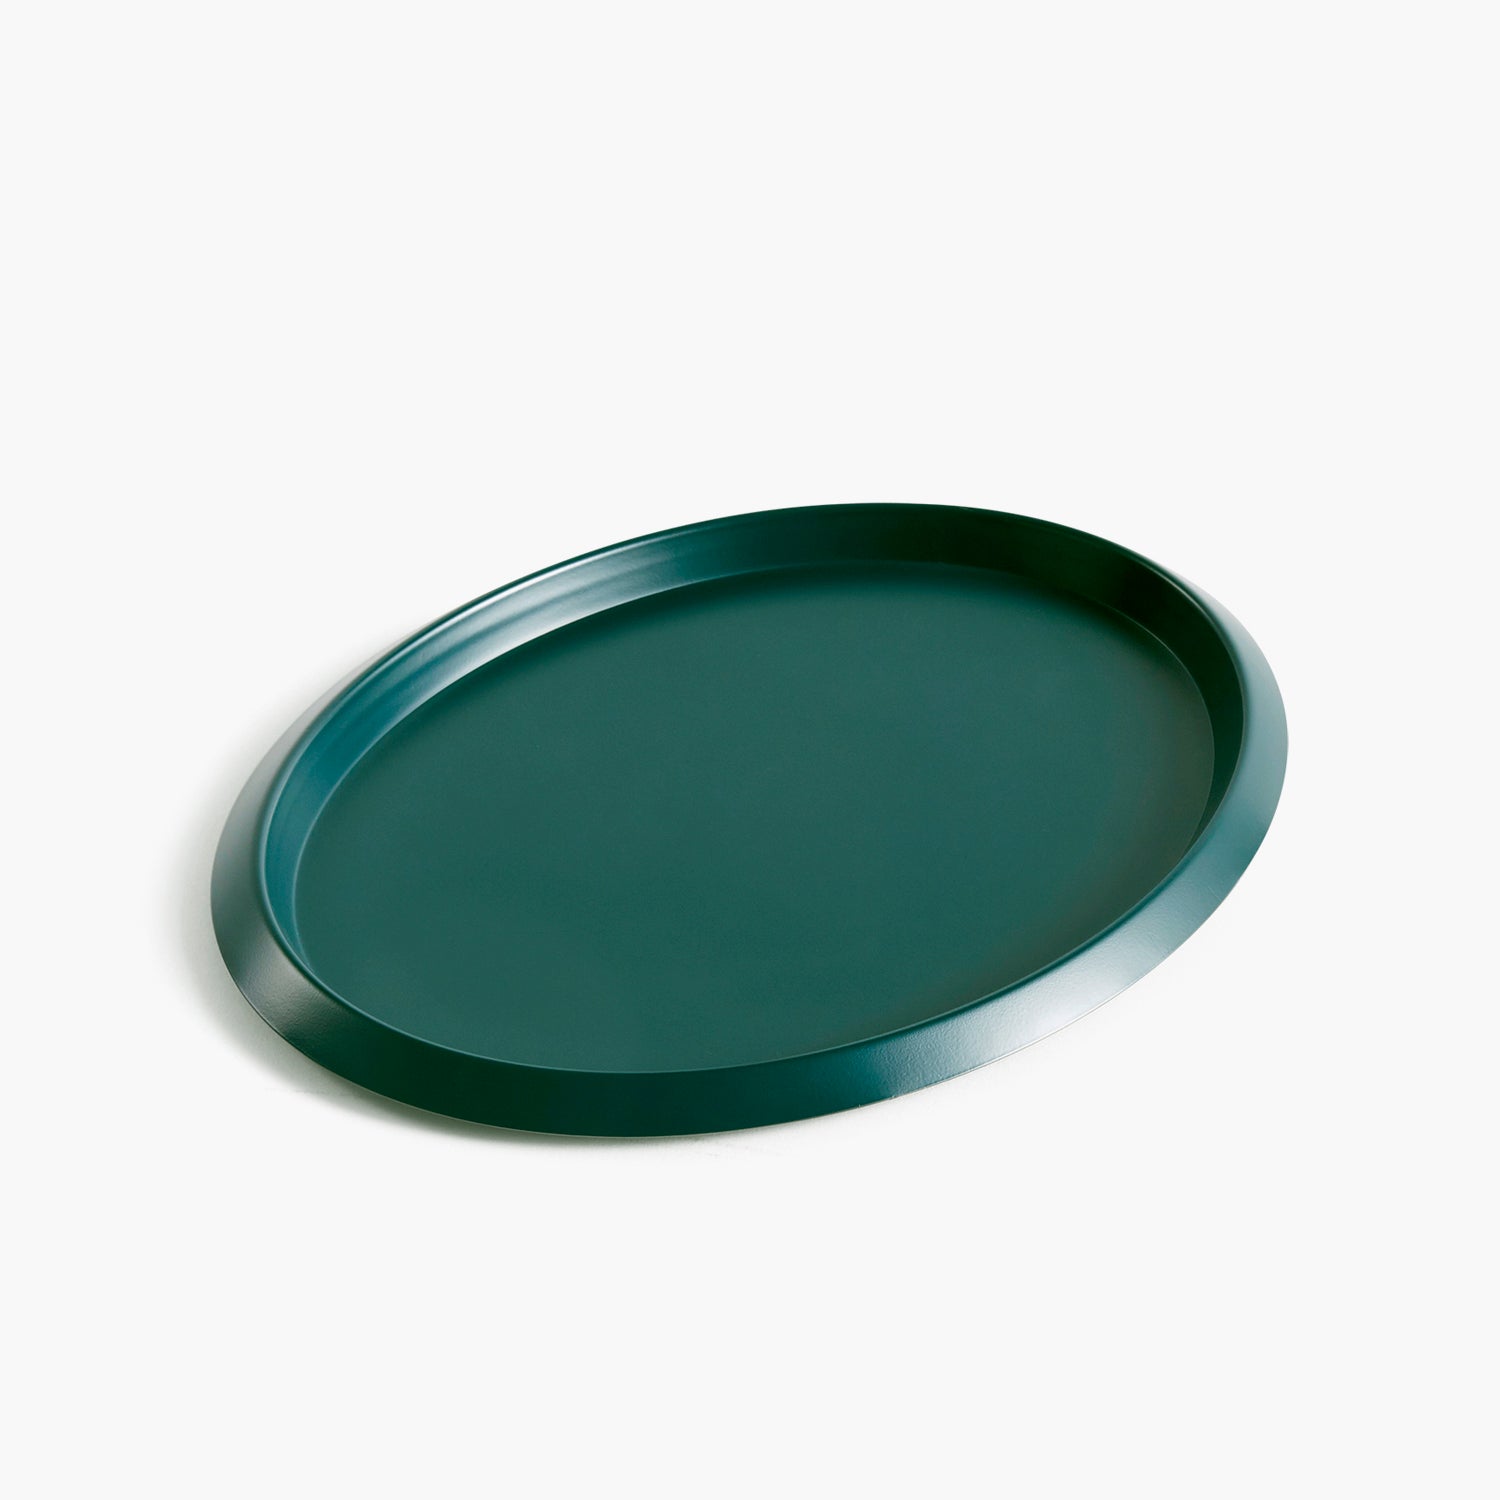 Elipse tray in dark green from HAY by Clara von Zweigbergk